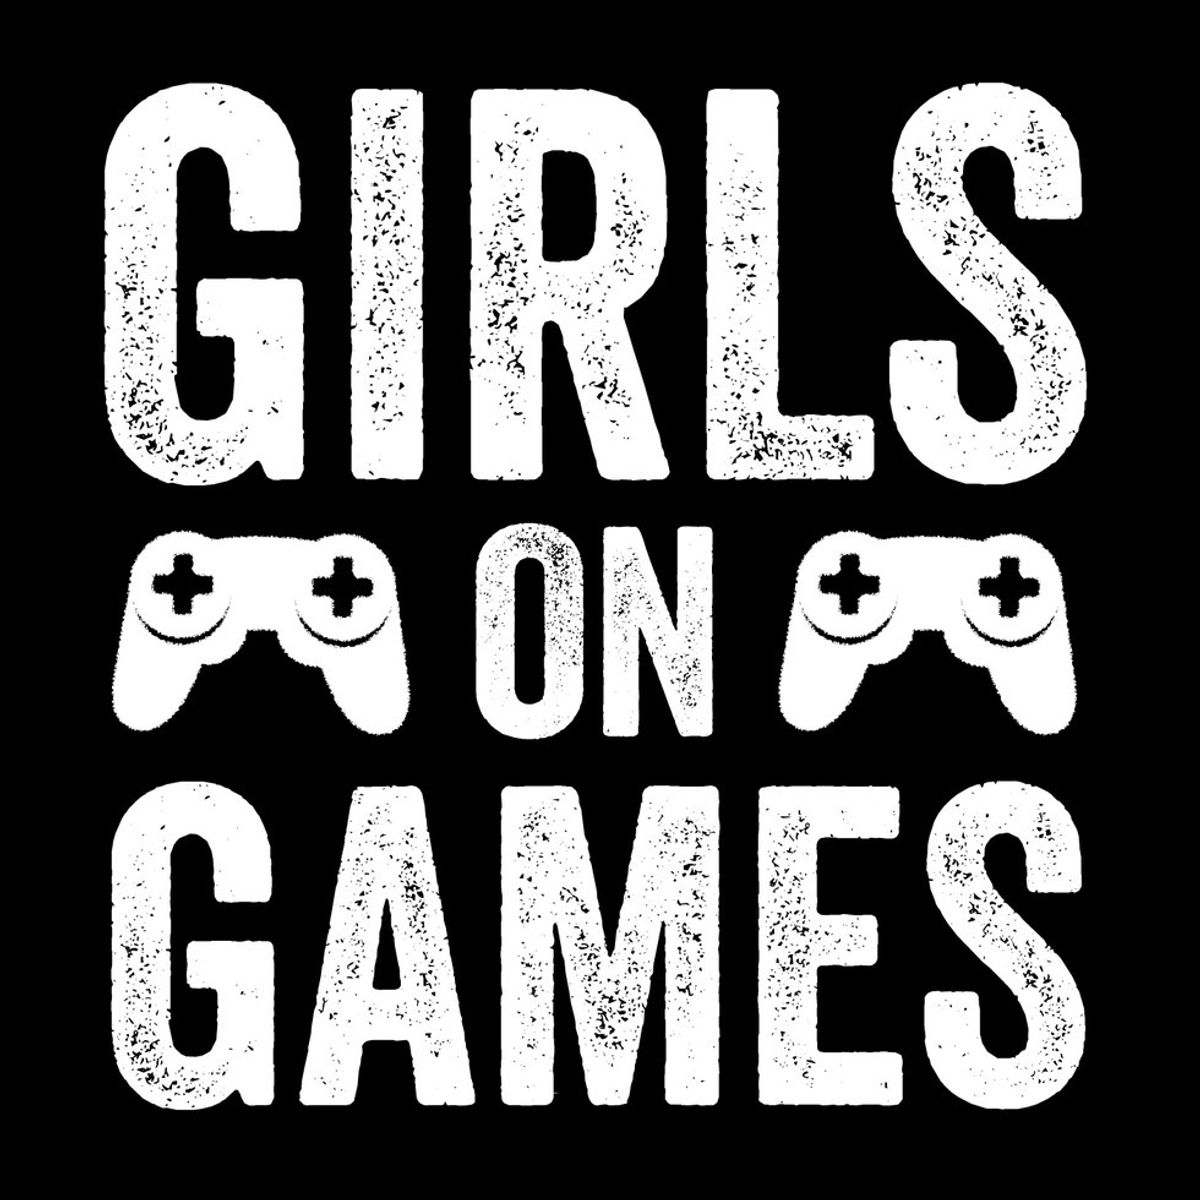 5 Gamer Girl Stereotypes